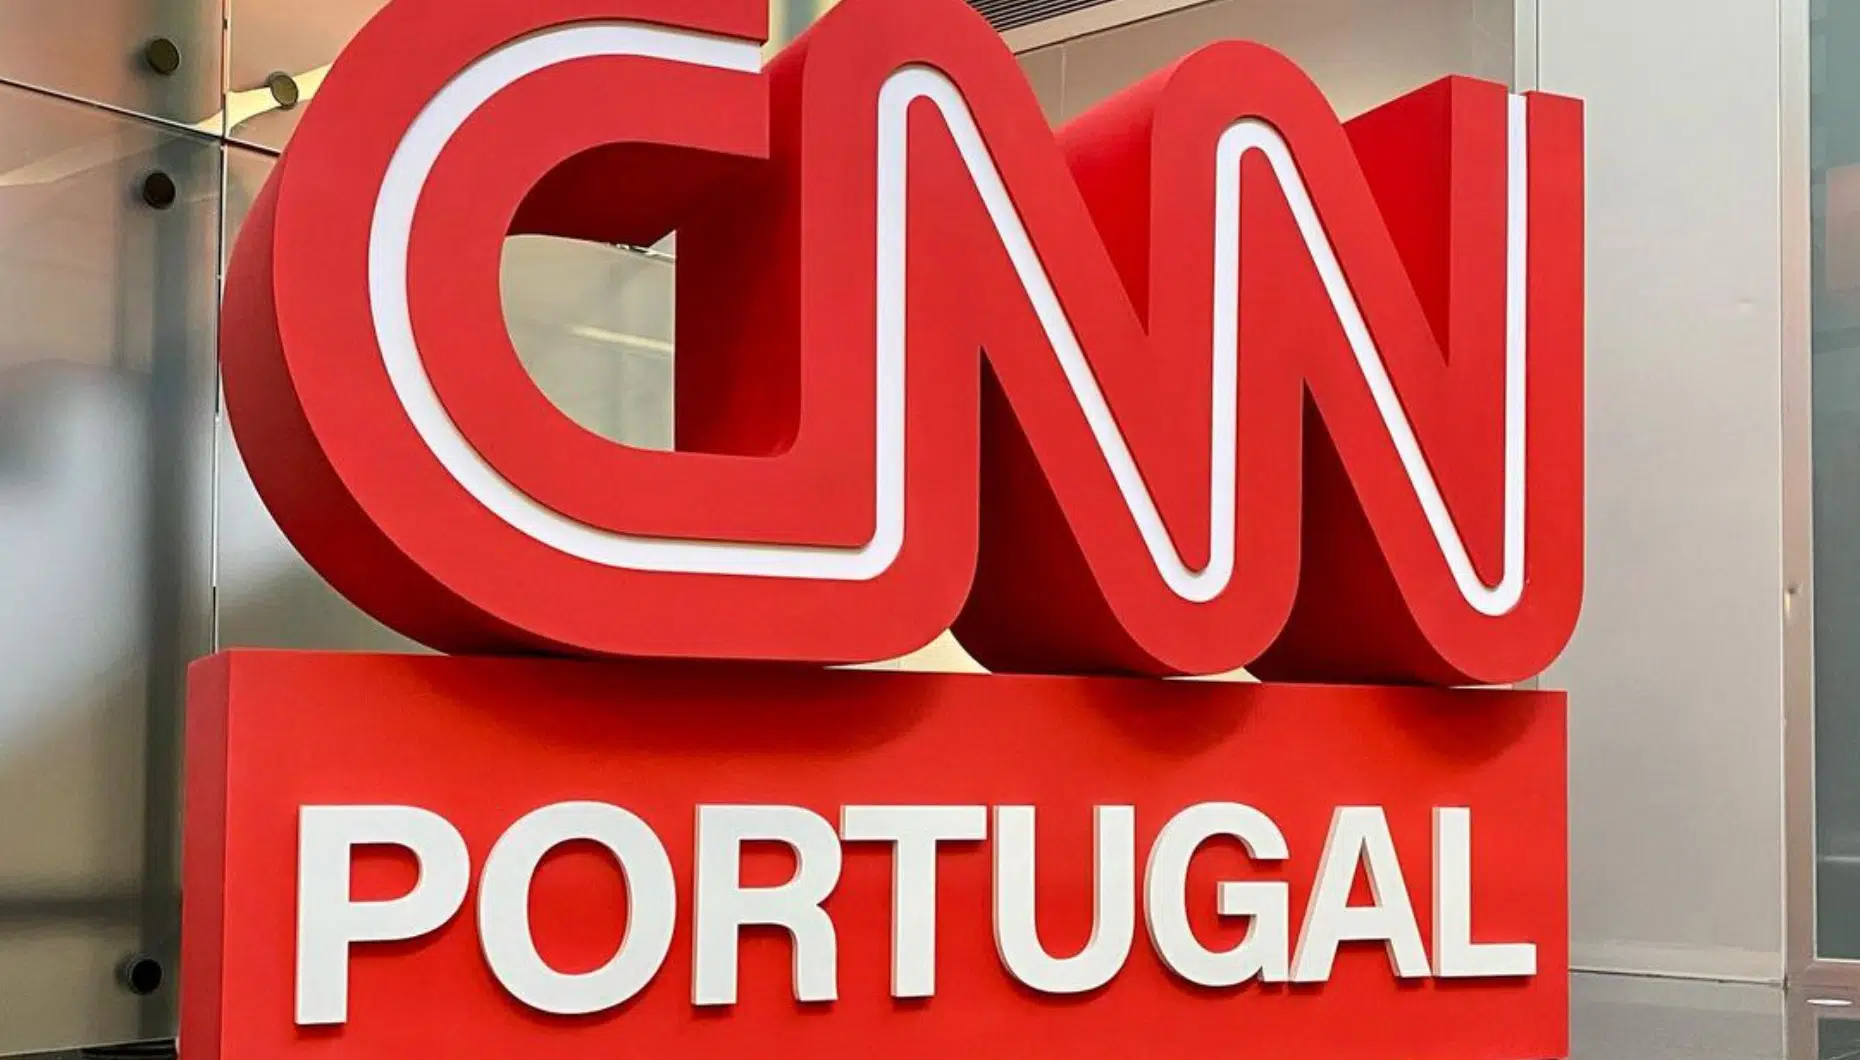 Jornalista Da Cnn Portugal Intriga Telespectadores Isto E A Versao 2 Da Cmtv